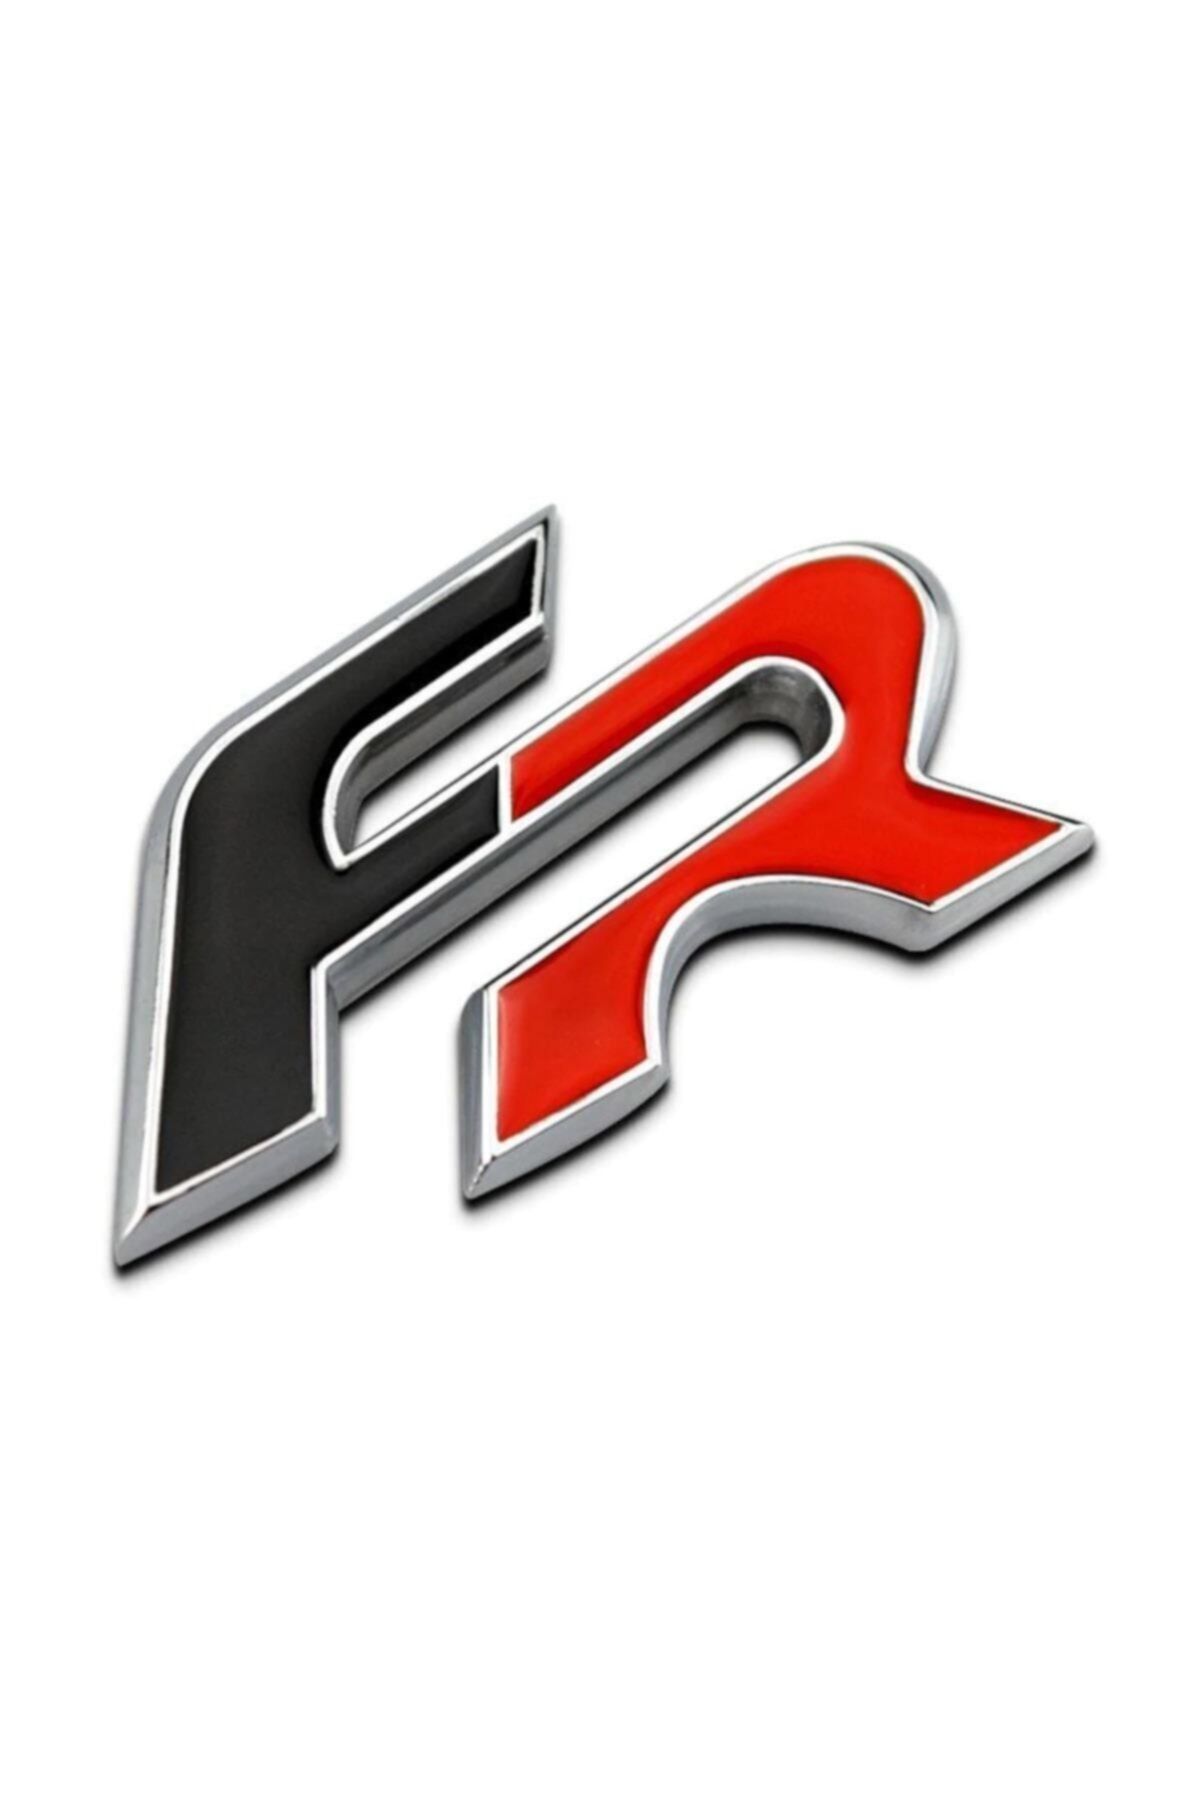 Şanlı Seat Leon Ibiza Fr Logo Metal Ön Panjur Logosu Kaliteli Malzeme